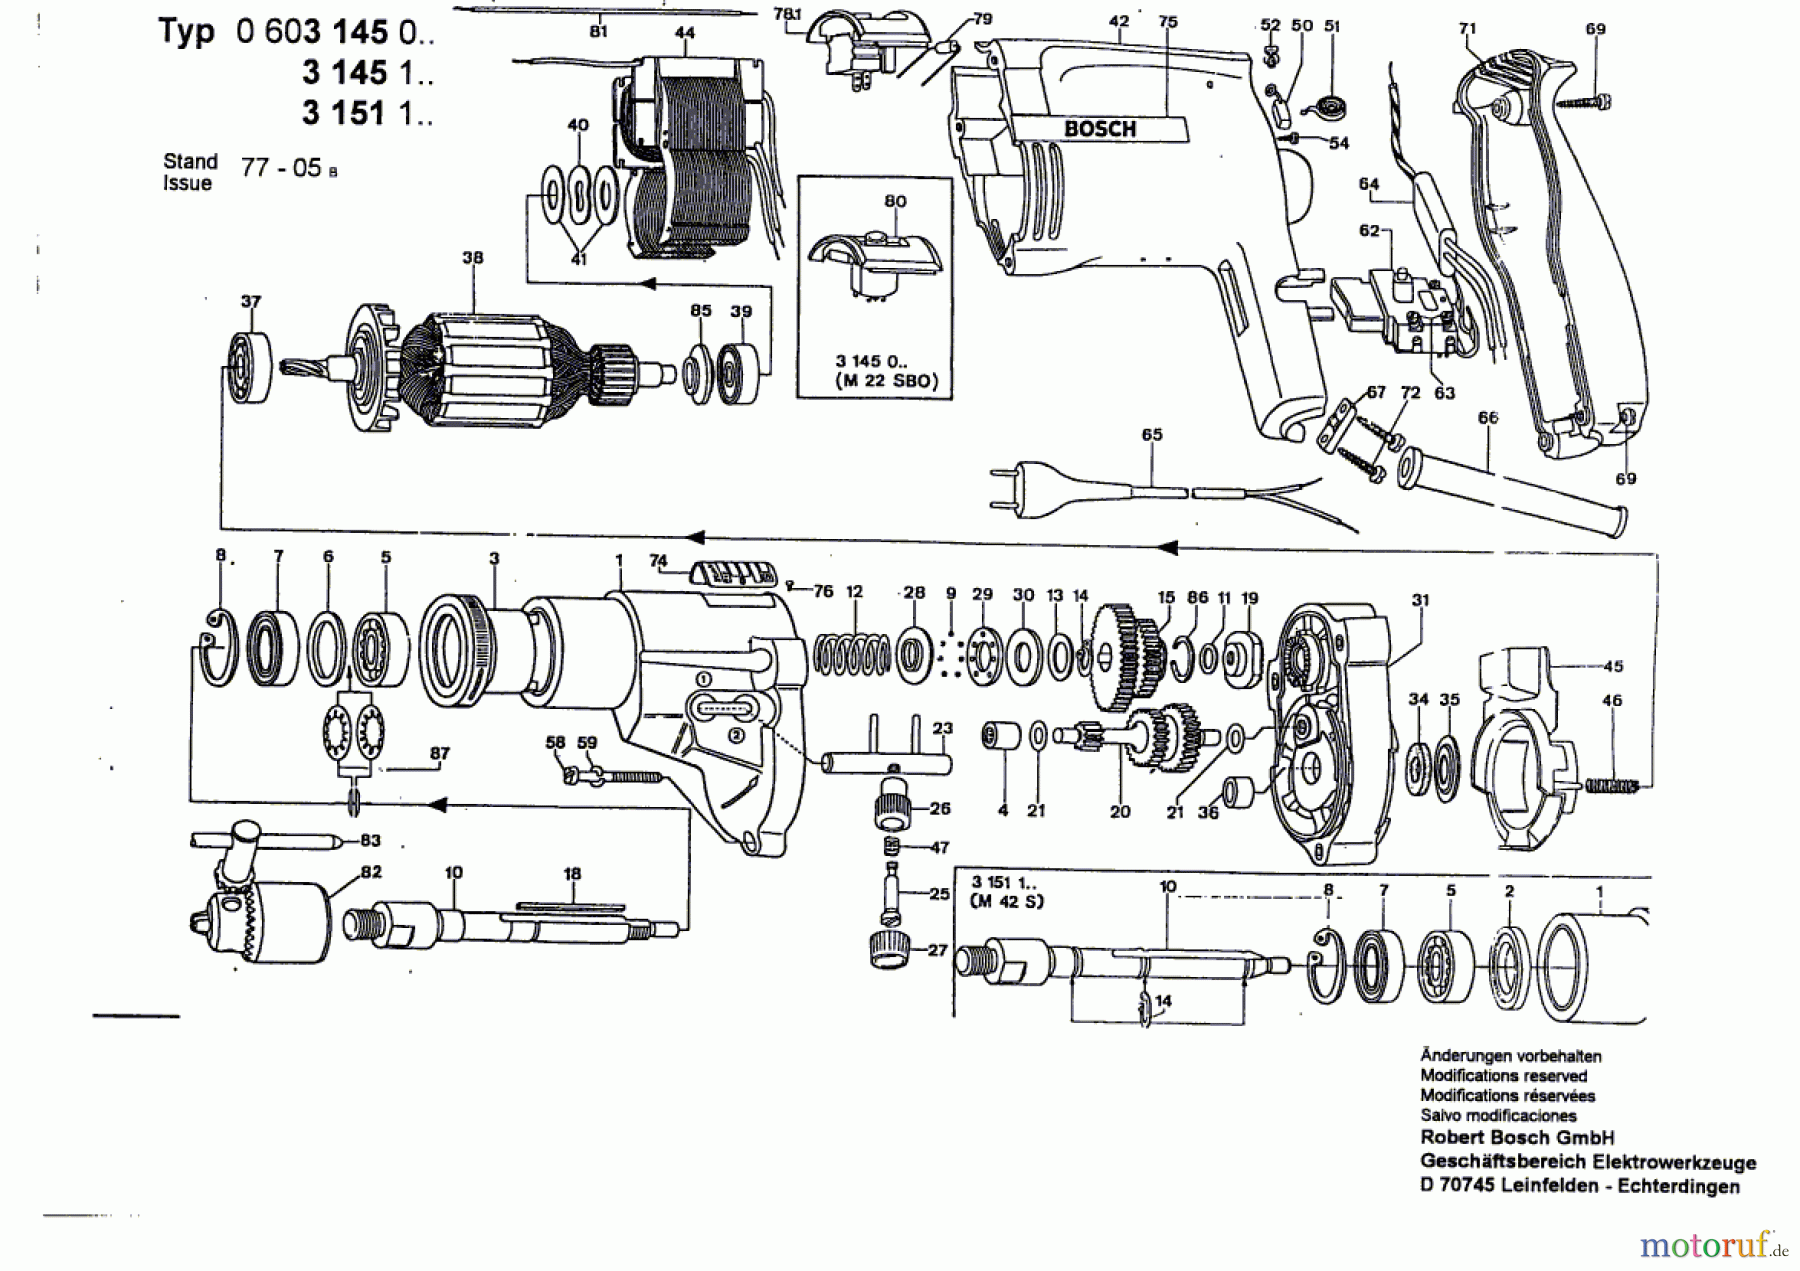  Bosch Werkzeug Schlagbohrmaschine M 42 S Seite 1